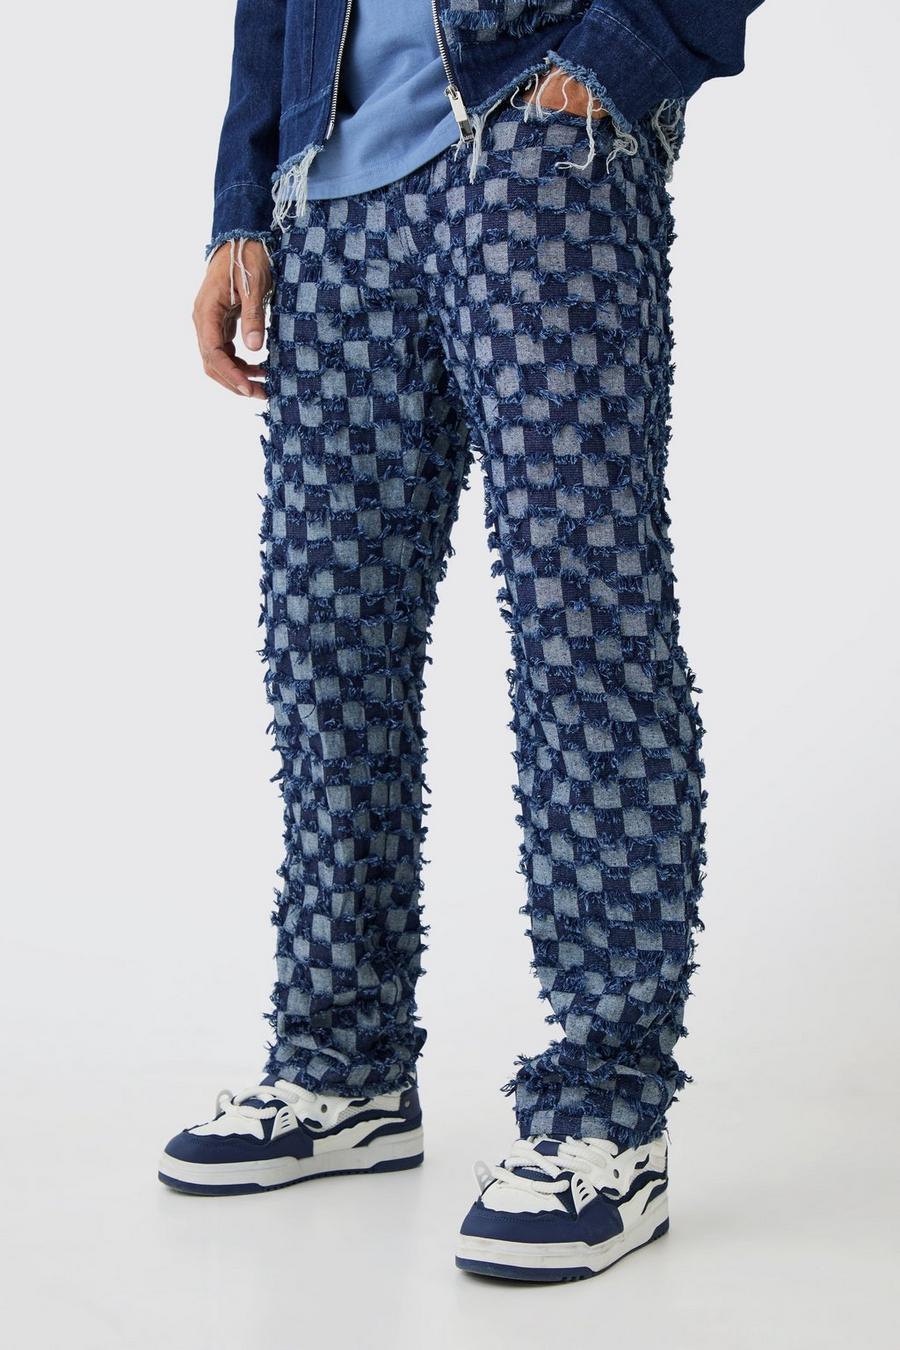 Lockere Jeans mit Schachbrett-Muster, Dark blue